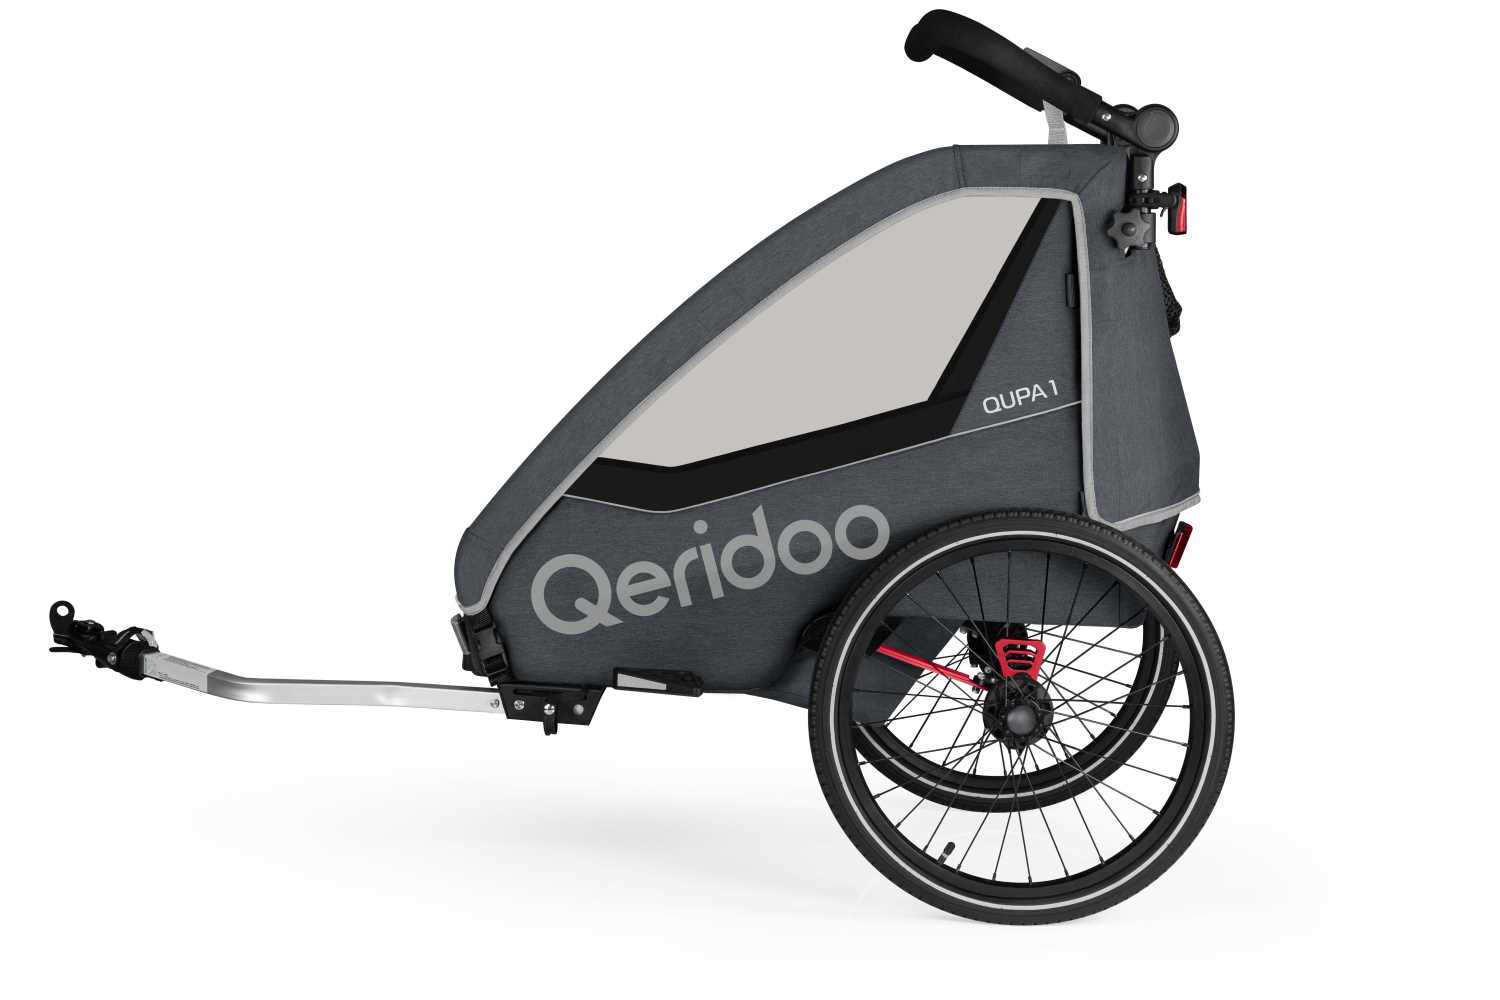 Produktbild von Qeridoo Qupa 1 (2023), grau (Q-QUP1-23-GR), Einsitzer Kinderfahrradanhänger mit Blattfeder Dämpfsystem